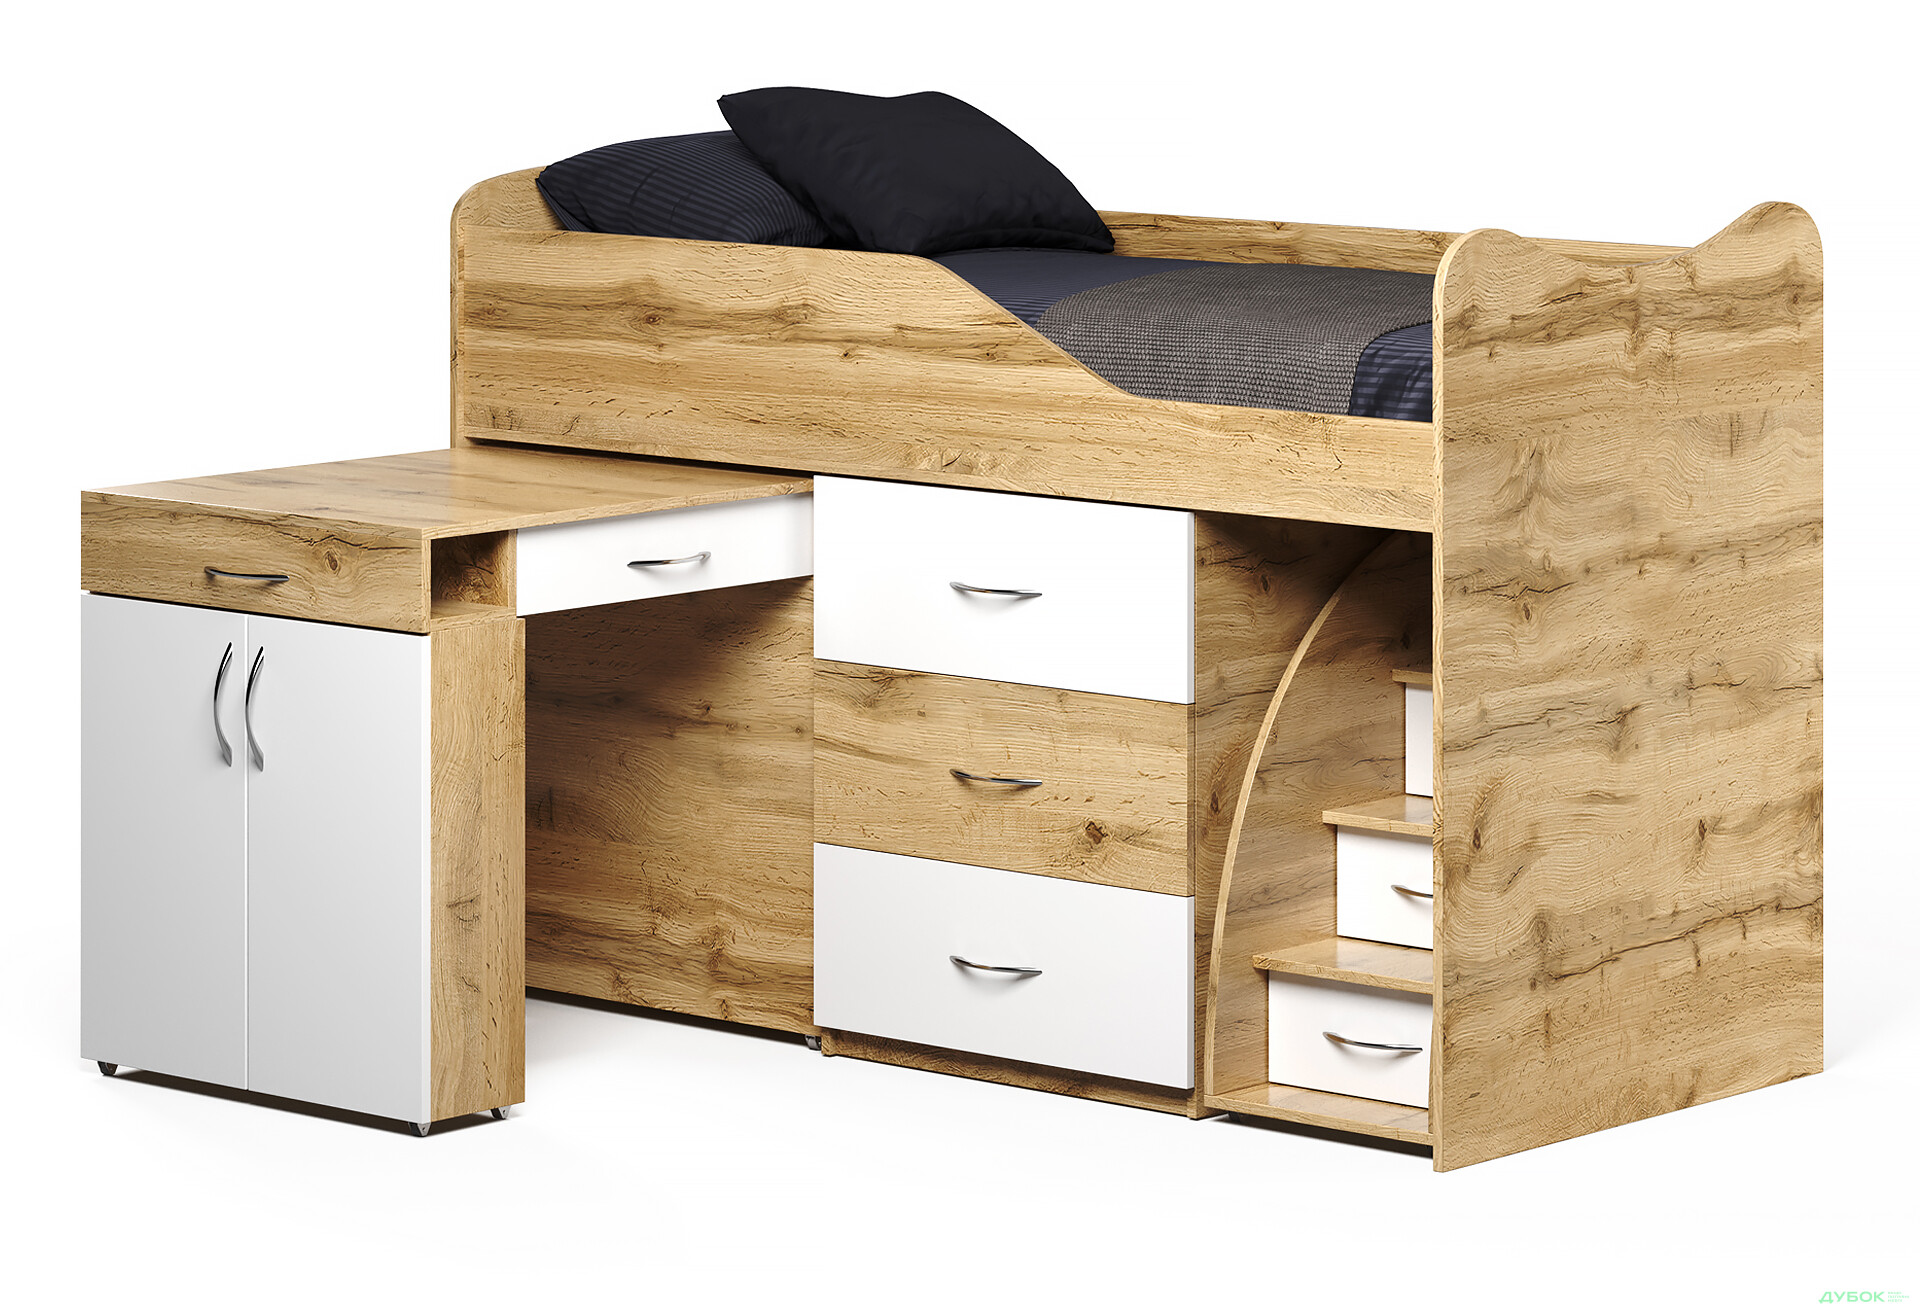 Фото 1 - Кровать-горка Виорина Деко 5 80х180 см с ящиками, лестницами и столом